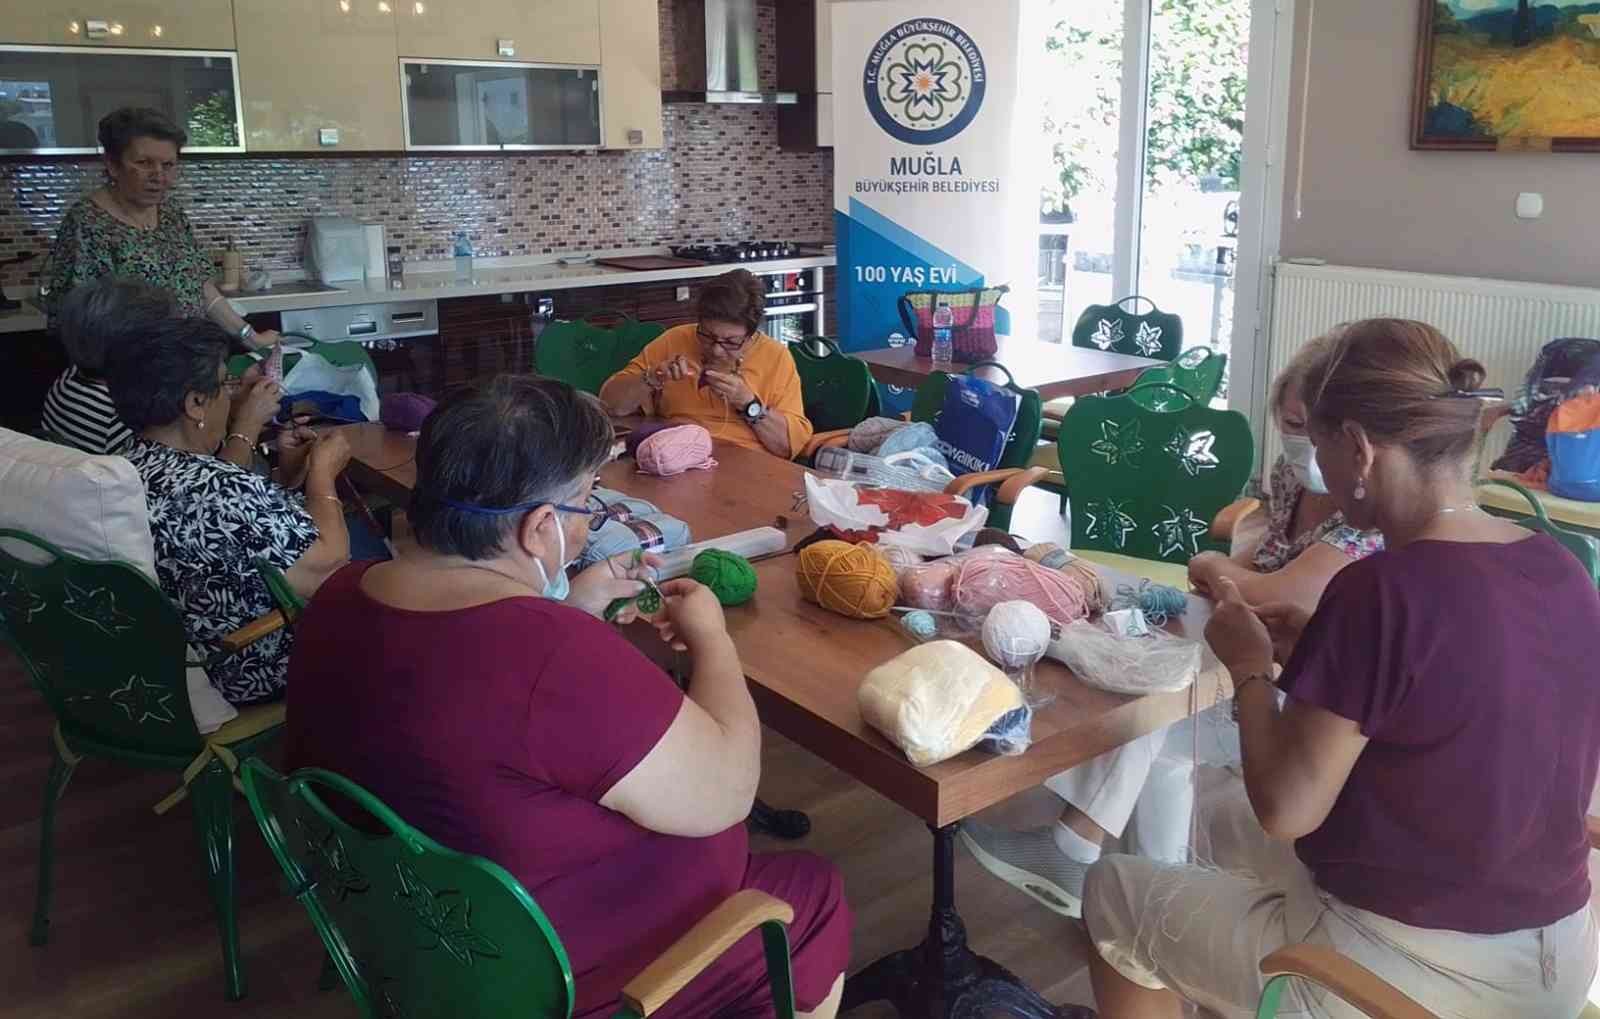 100 Yaş Evi üyelerinden ihtiyaç sahiplerine atkı  ve kazak #mugla